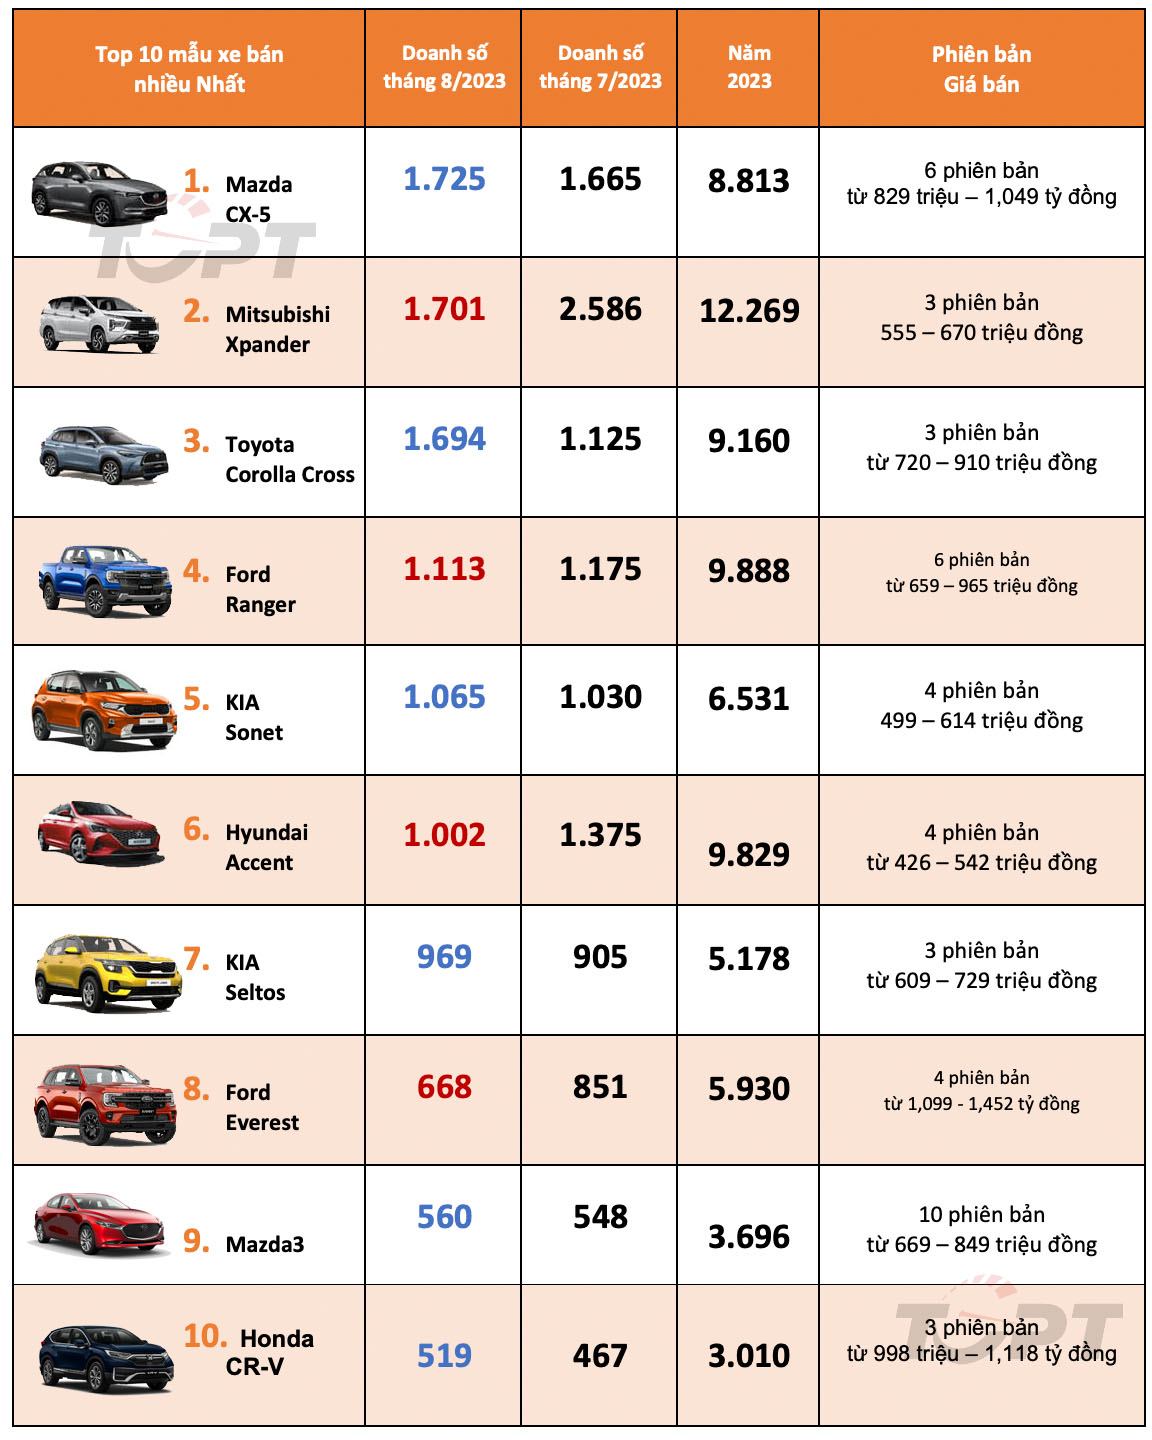 Thị trường ô tô Việt Nam tháng 8/2023: Top 10 mẫu xe bán nhiều nhất - Mazda CX-5 tạo nên bất ngờ - Ảnh 1.